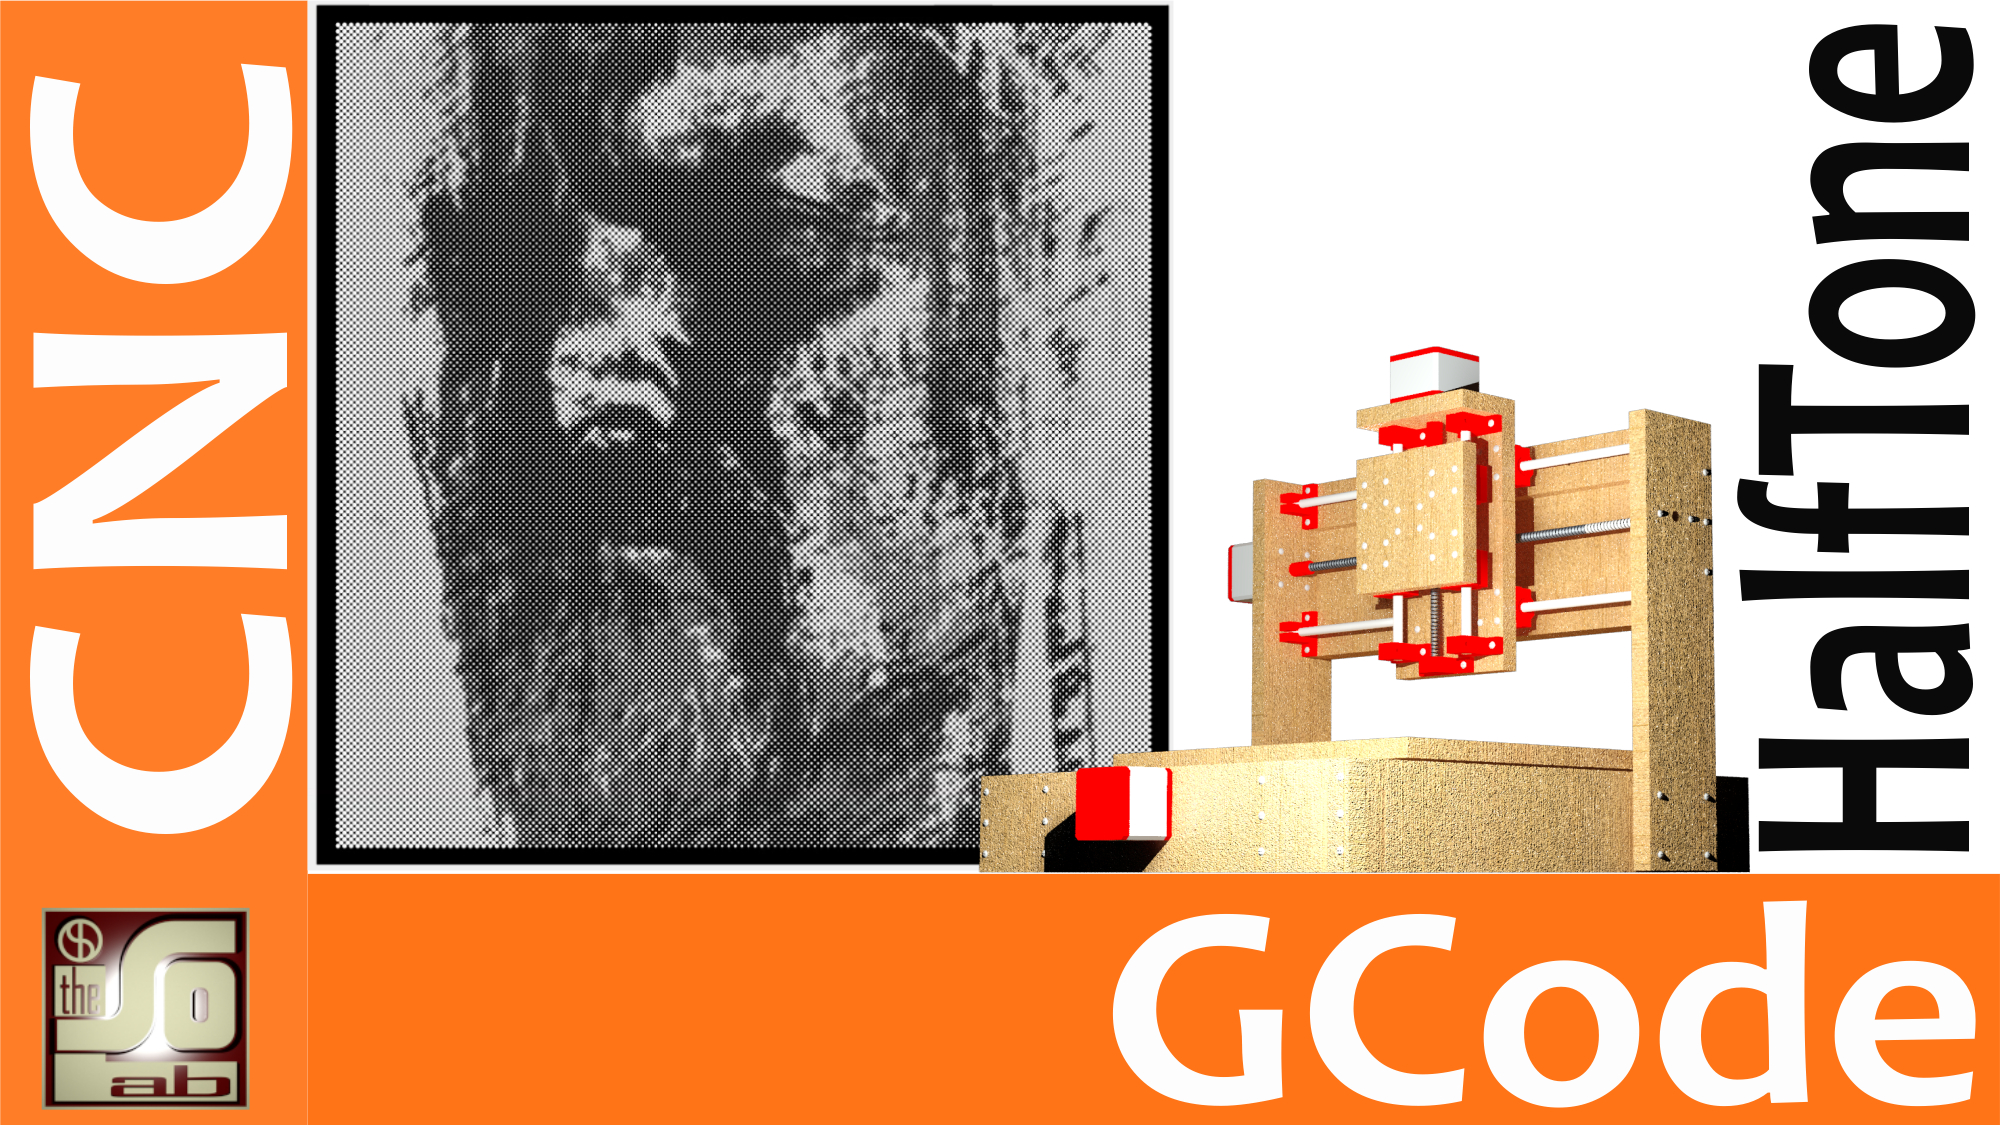 CNC Tutorial - Creazione del Gcode per stampa di foto da cnc con Halftoner